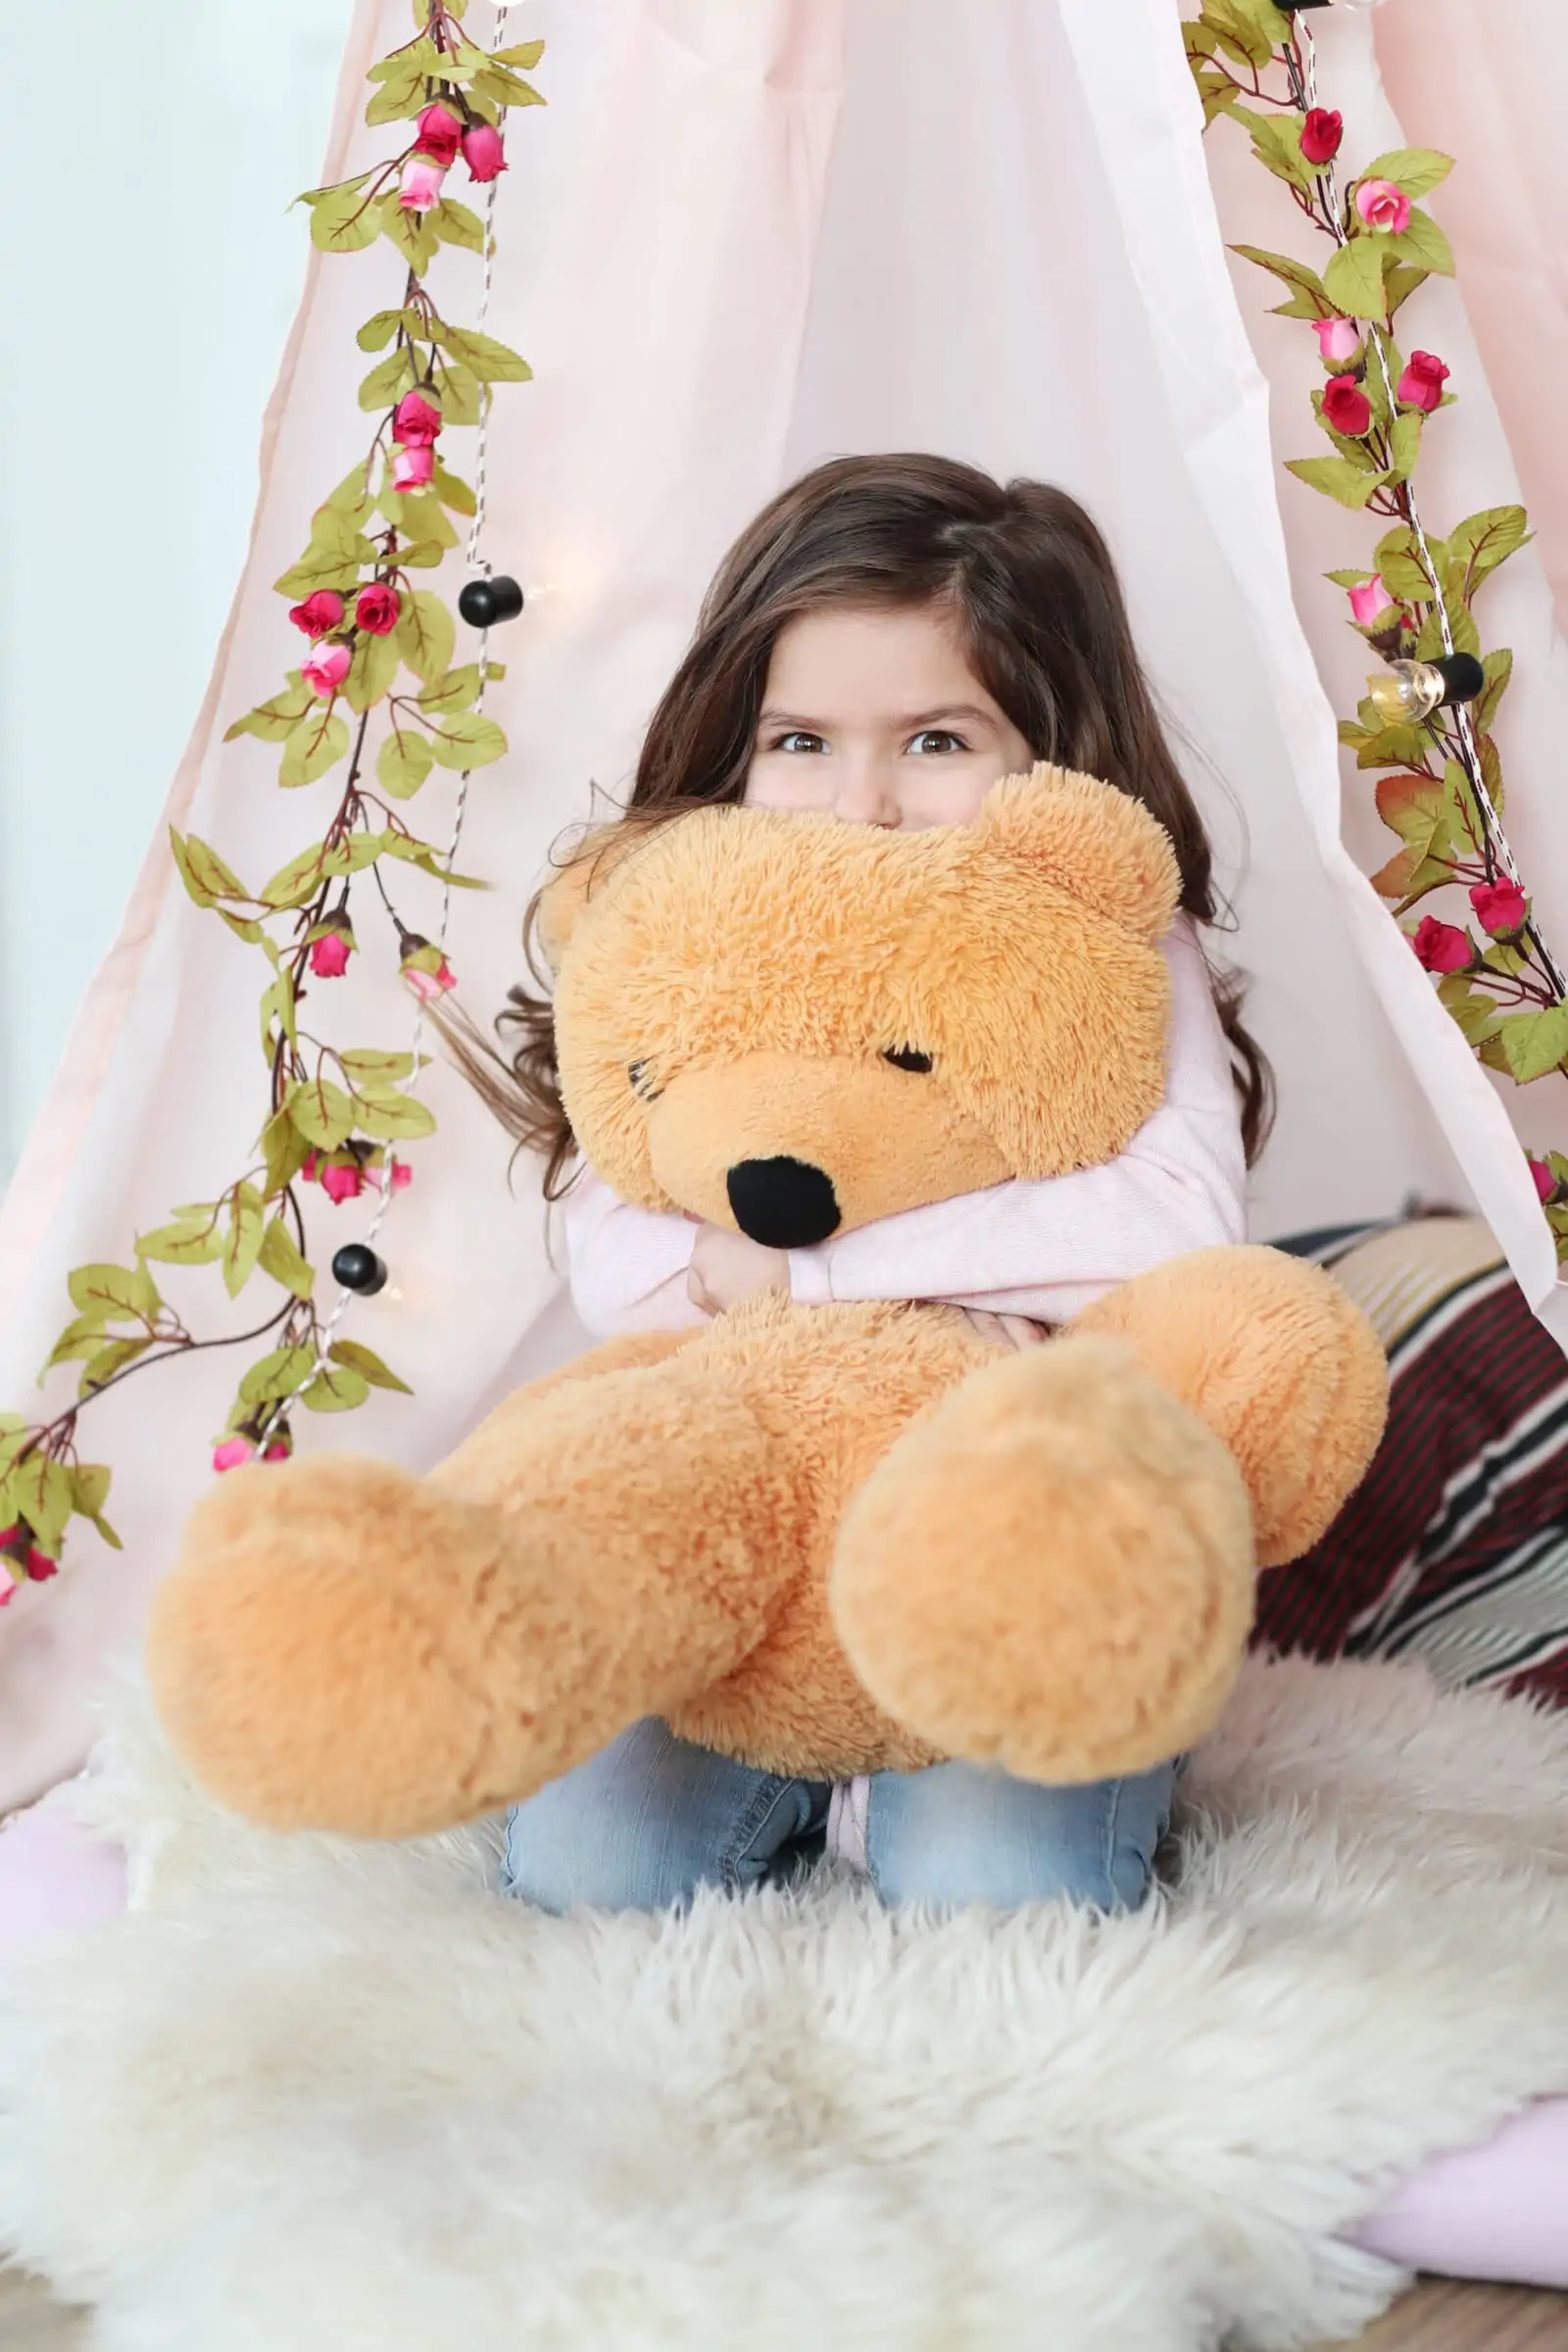 Mädchen hält grossen Teddybär im Arm